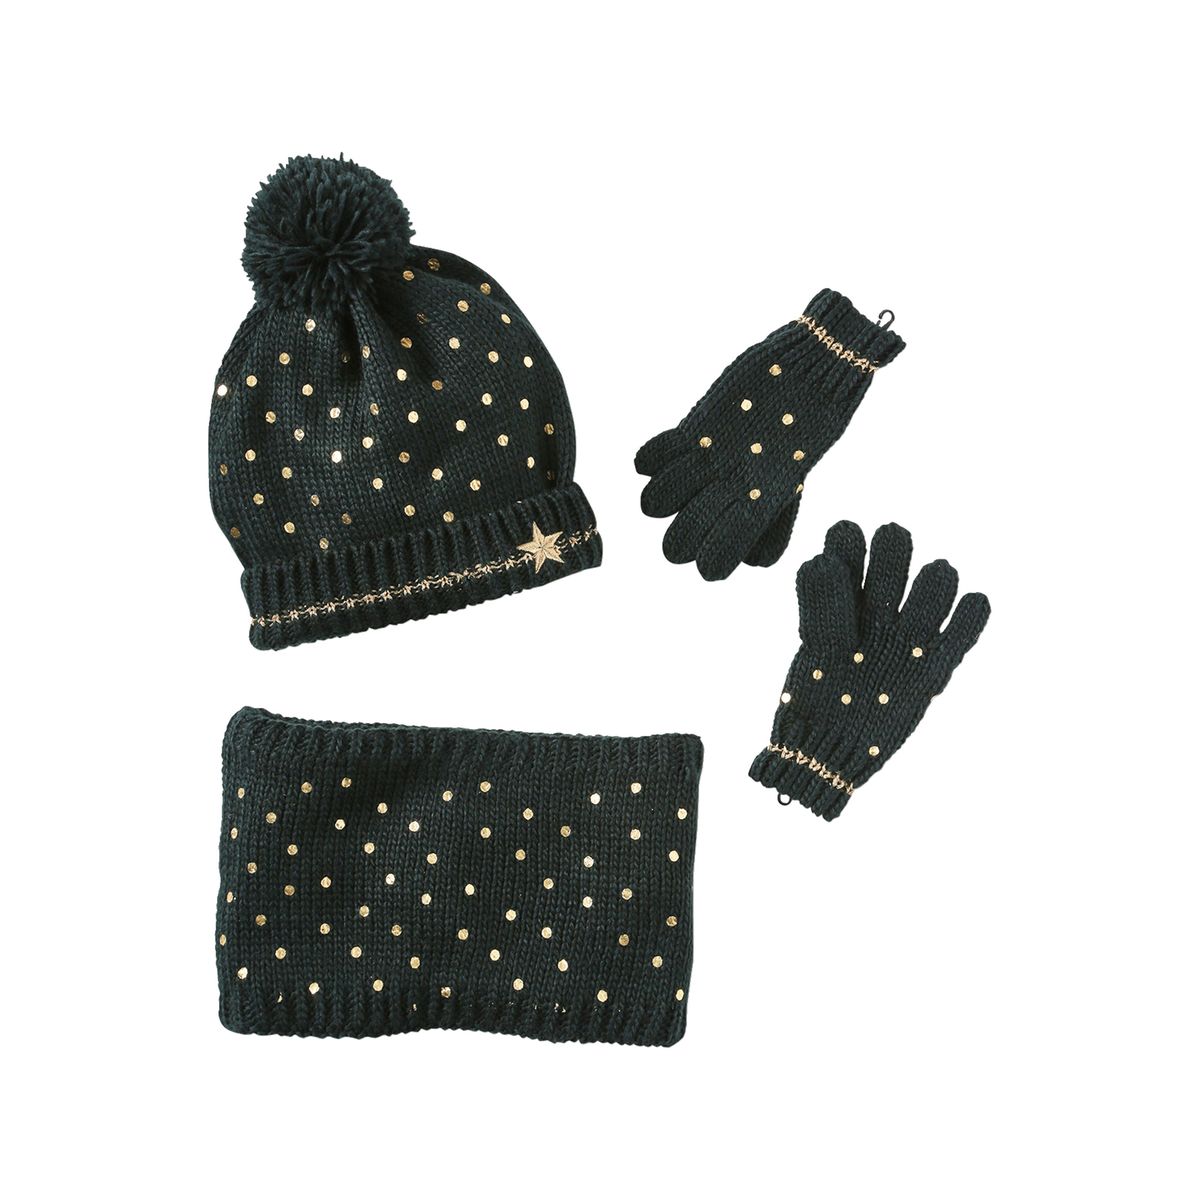 Echarpe bonnet gants pour fille en laine vintage des années 90